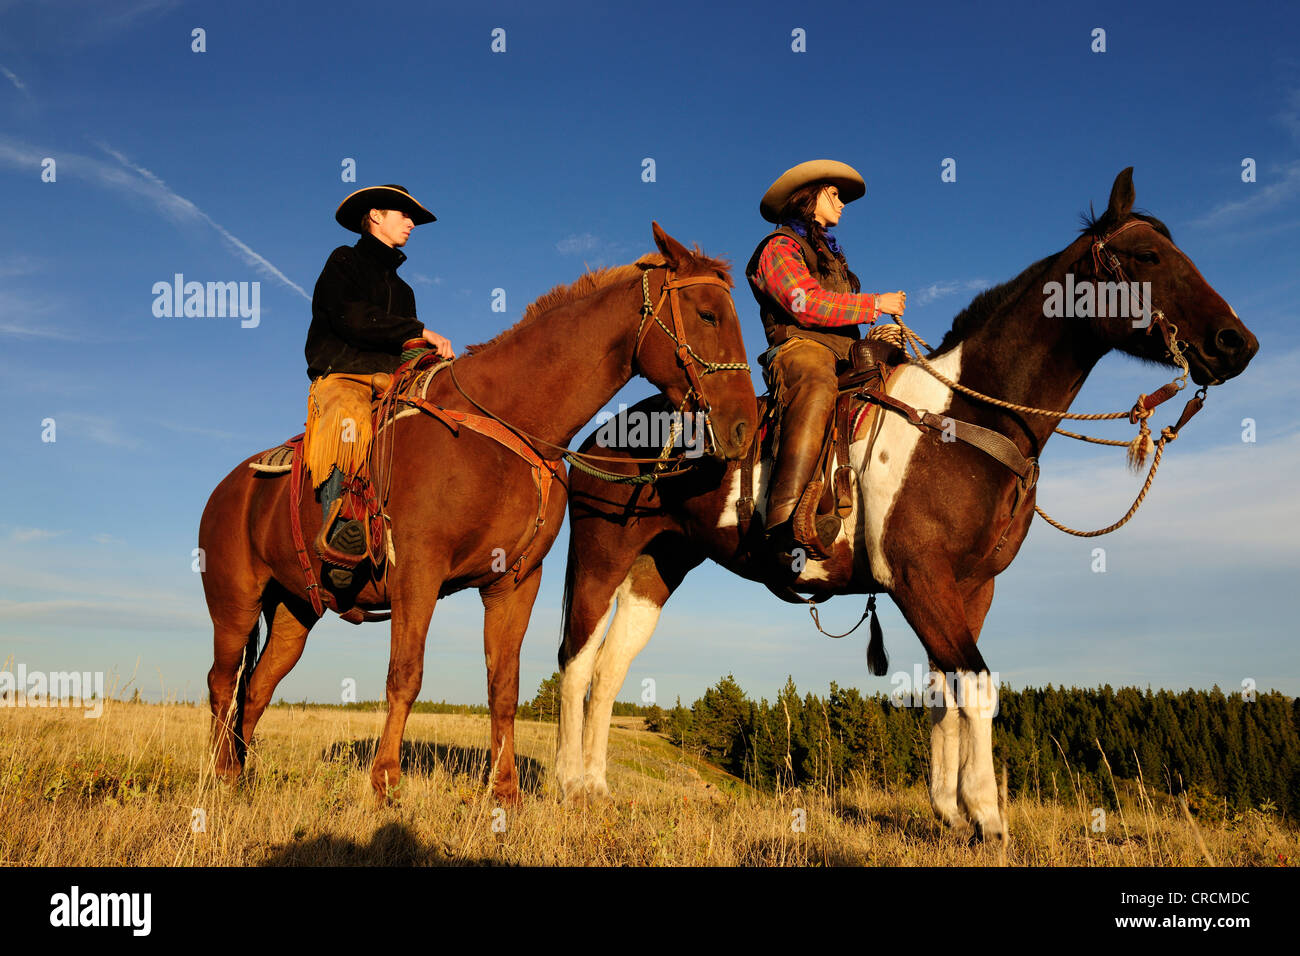 Une cowgirl et un cowboy assis sur leurs chevaux, Saskatchewan, Canada Banque D'Images